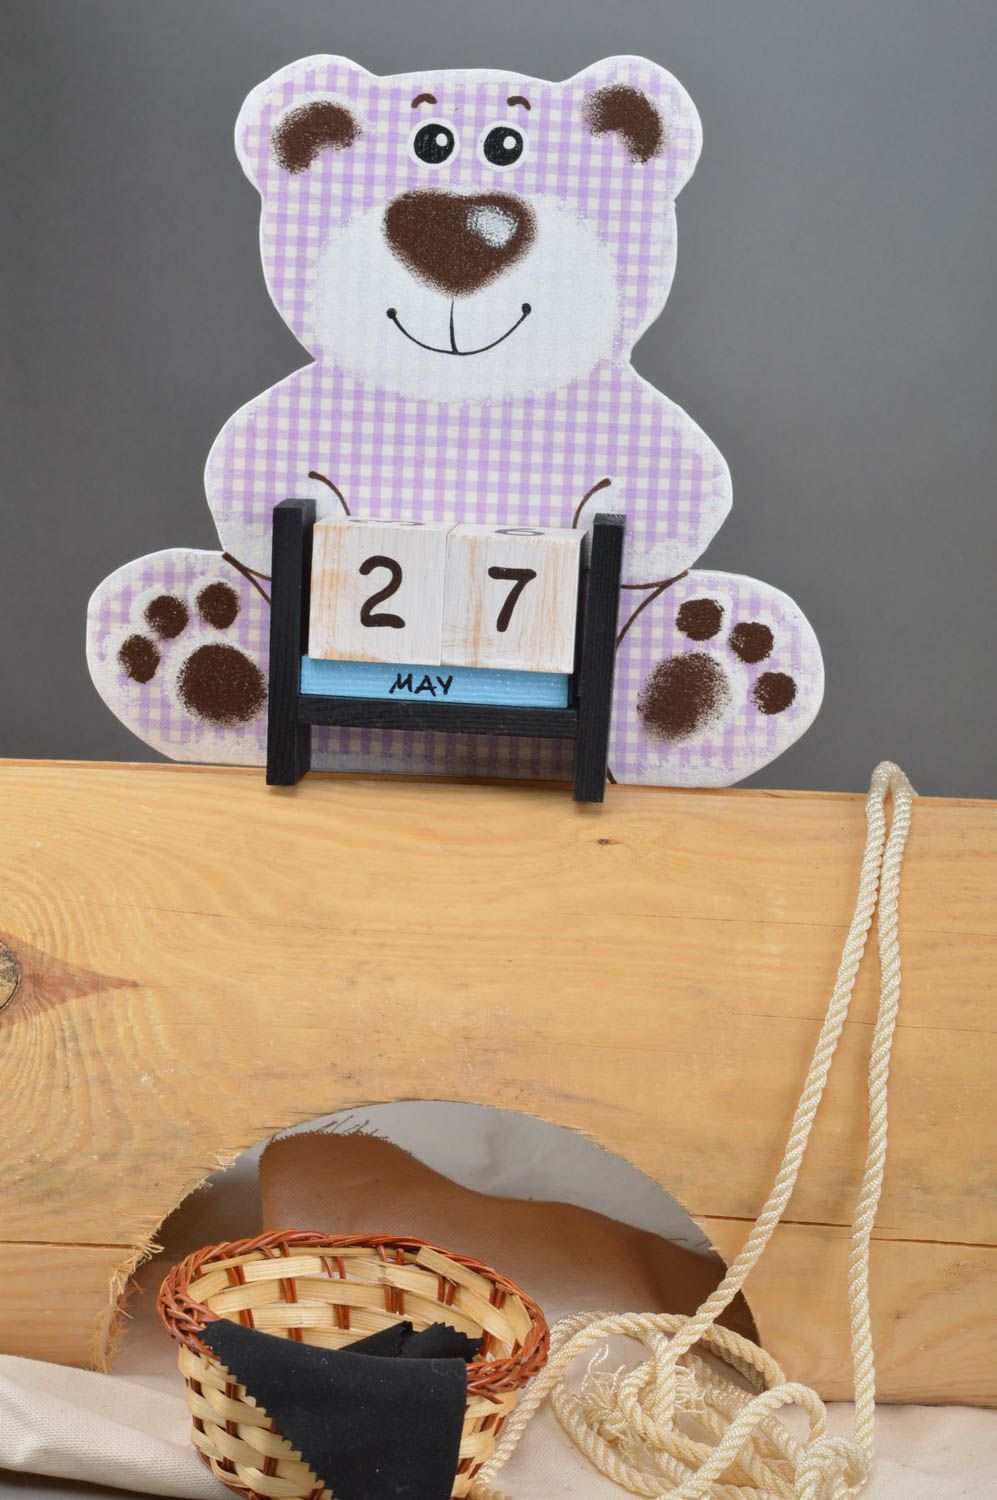 Оригинальный календарь в виде медведя в технике декупаж и росписи ручной работы  фото 1